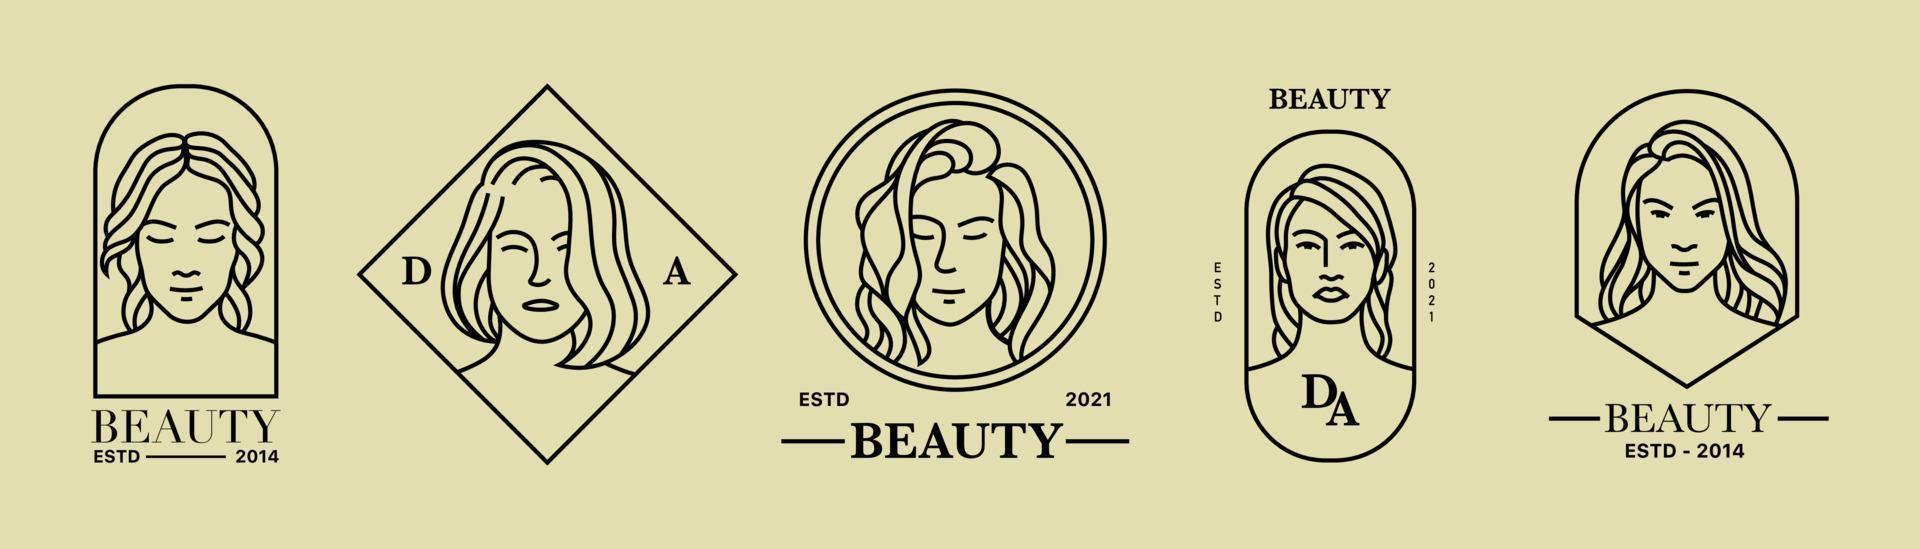 redigerbar stroke linje samling av flickan märket i en svart monoline stil. enkla logotypidéer för hudvård, smink, skönhetssalong, etc. vektor